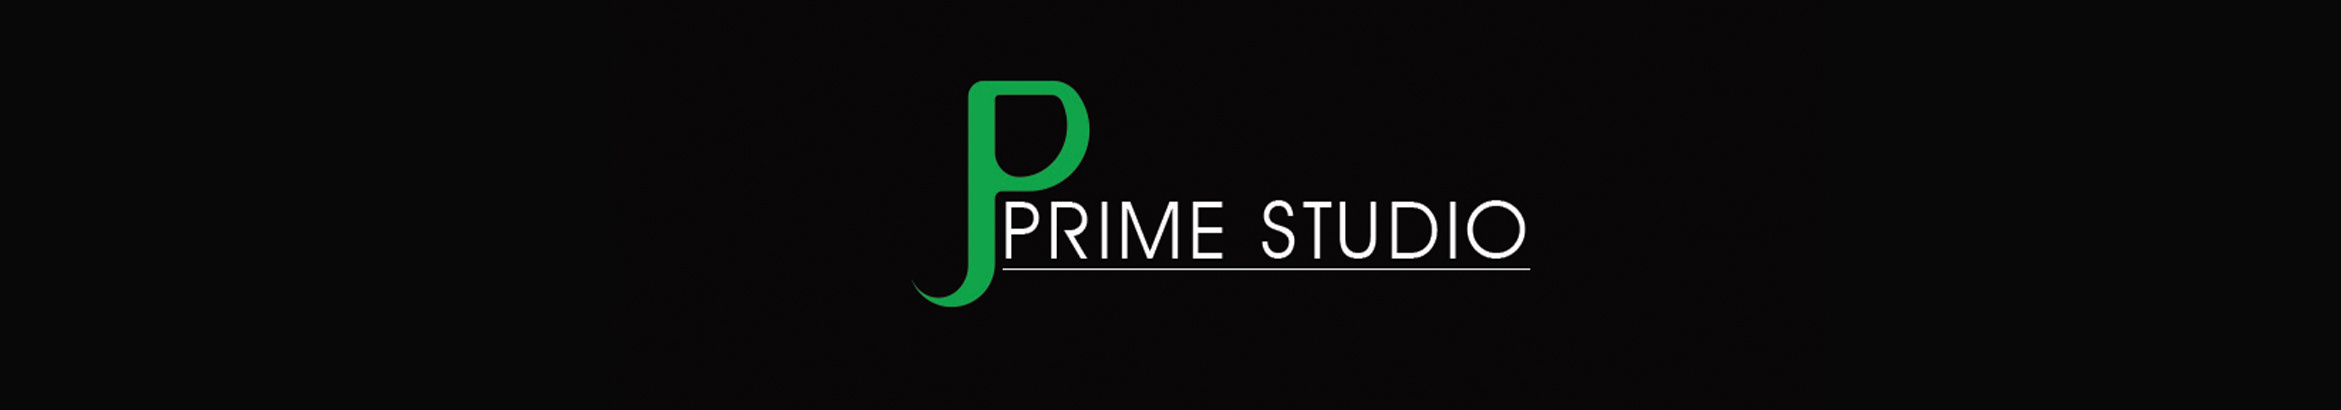 Prime Studio's profile banner